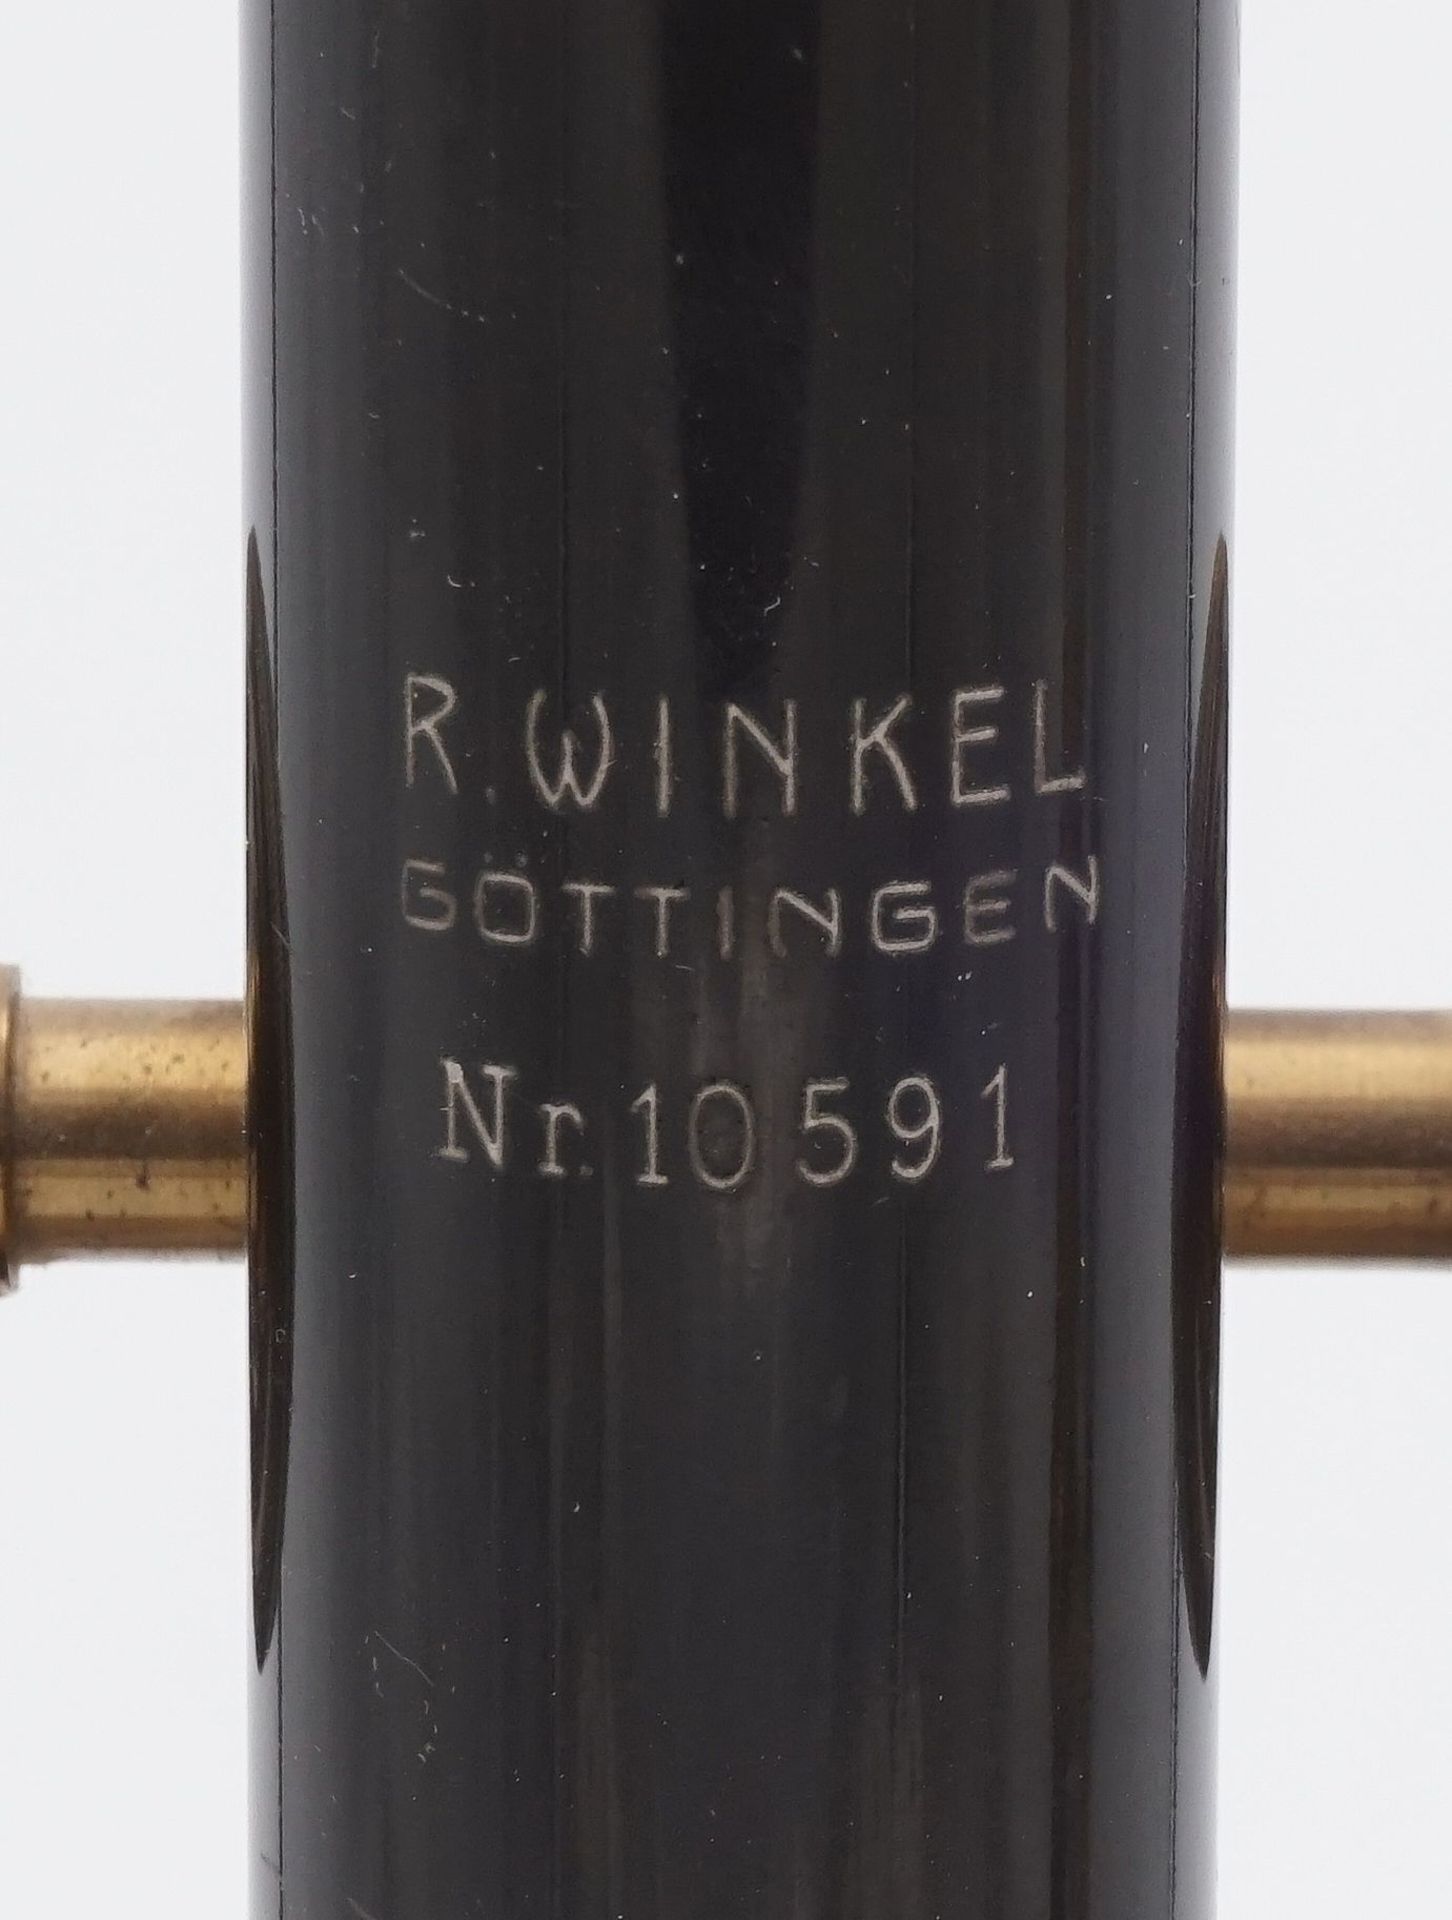 Zwei Spiegelmikroskope 1. Hälfte 19. Jh.1) R. Winkel Göttingen Kosmos Mikroskop Nr. 10591, 1. Hälfte - Bild 3 aus 5